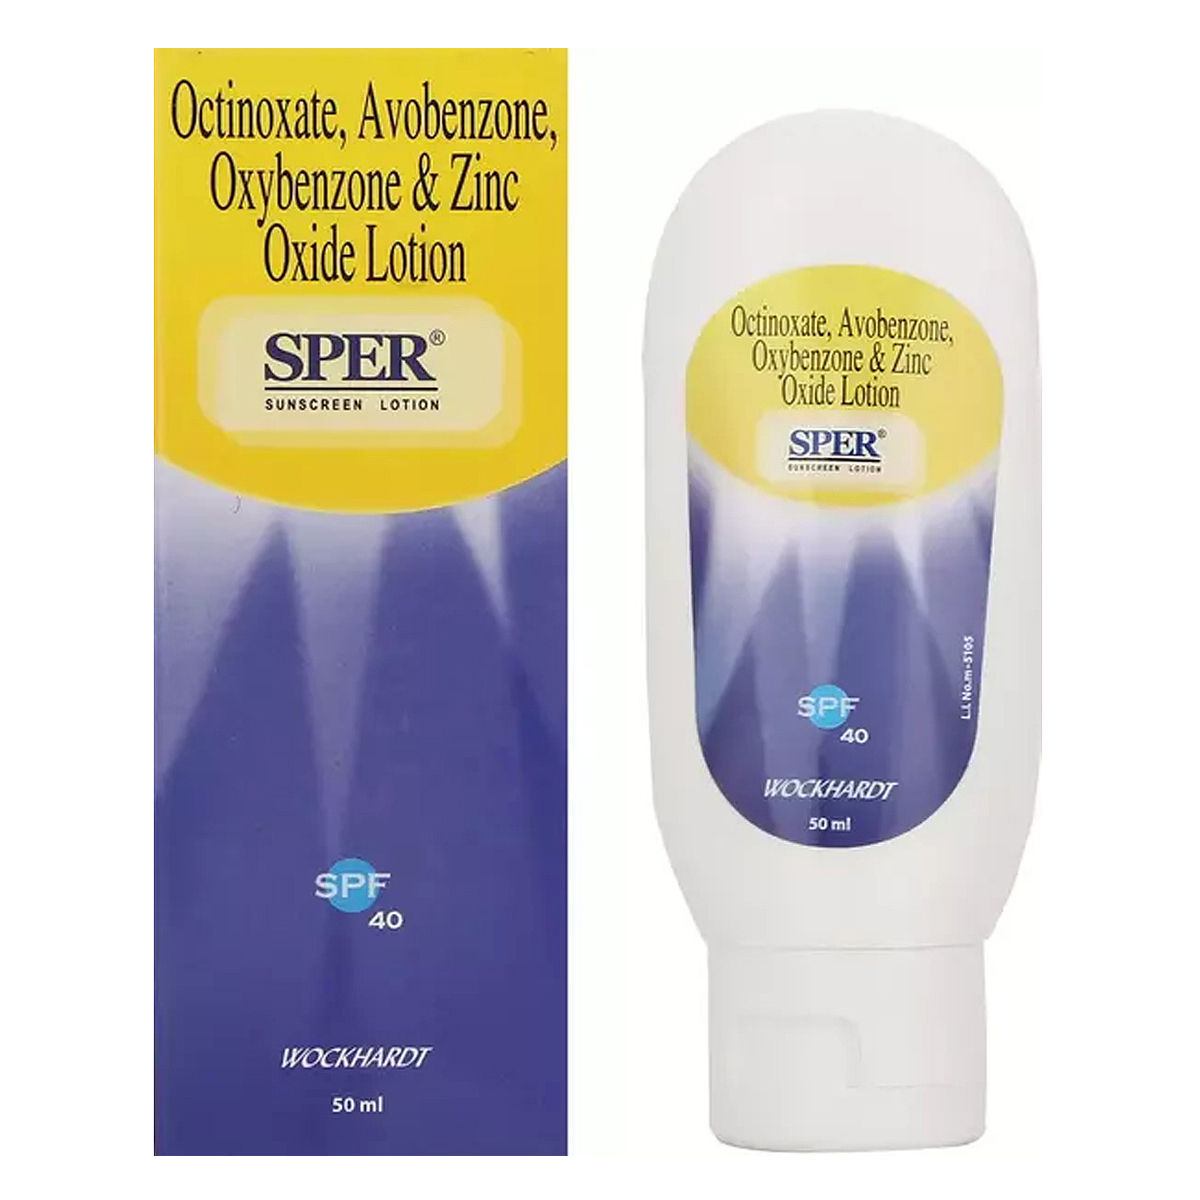 Buy Sper Suncreen Lotion SPF 40, 50 ml Online